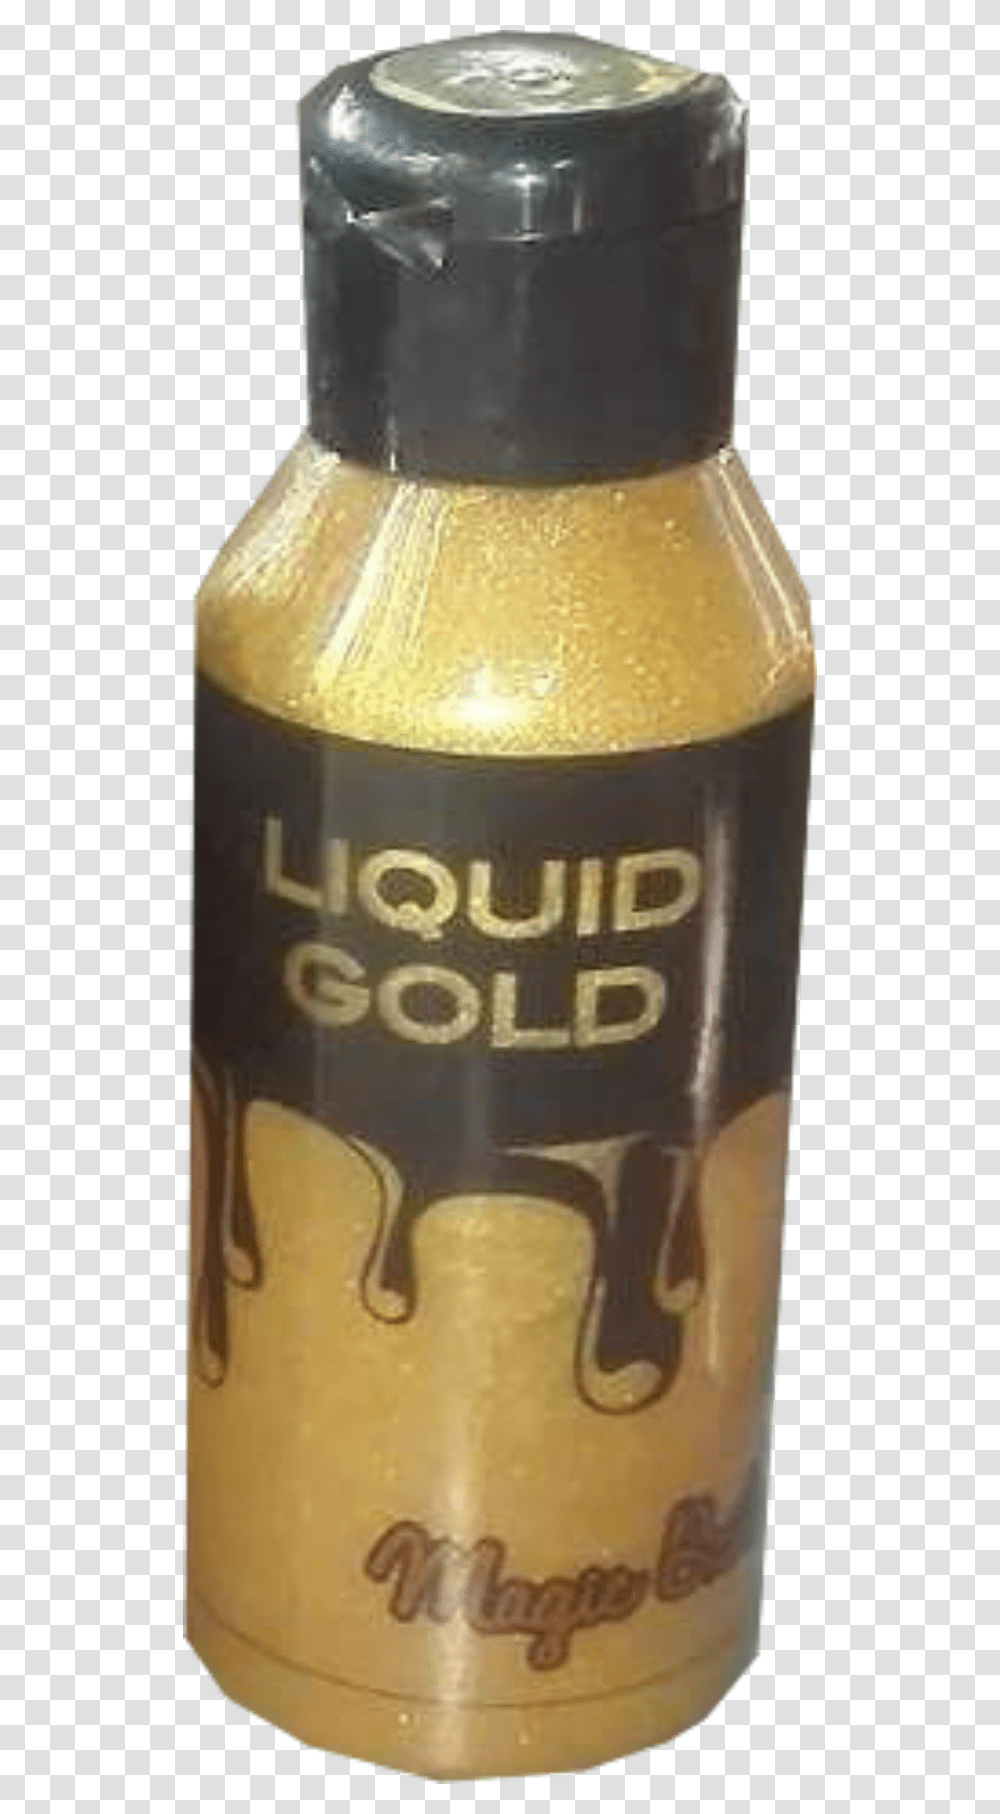 Liquid Gold Glass Bottle, Beverage, Alcohol, Food, Shaker Transparent Png